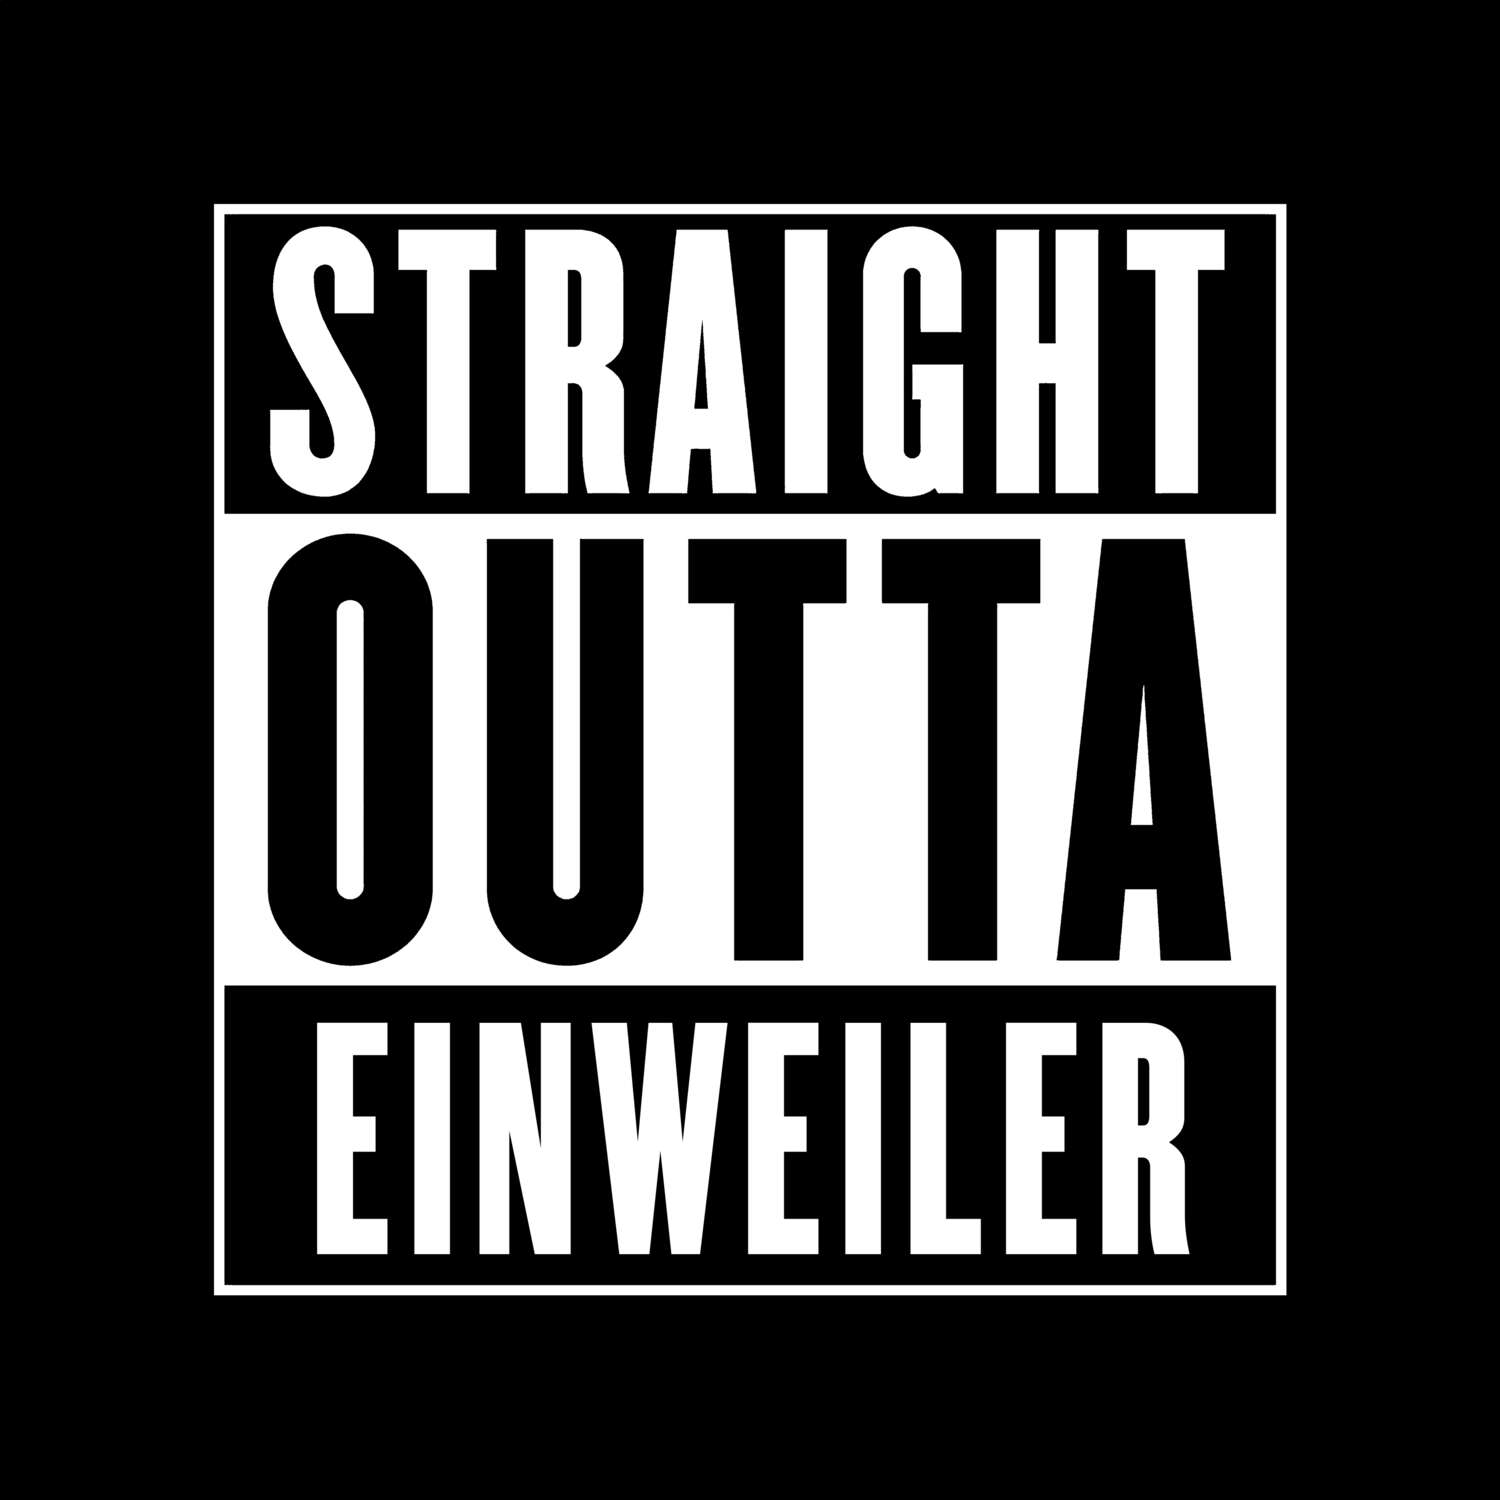 Einweiler T-Shirt »Straight Outta«